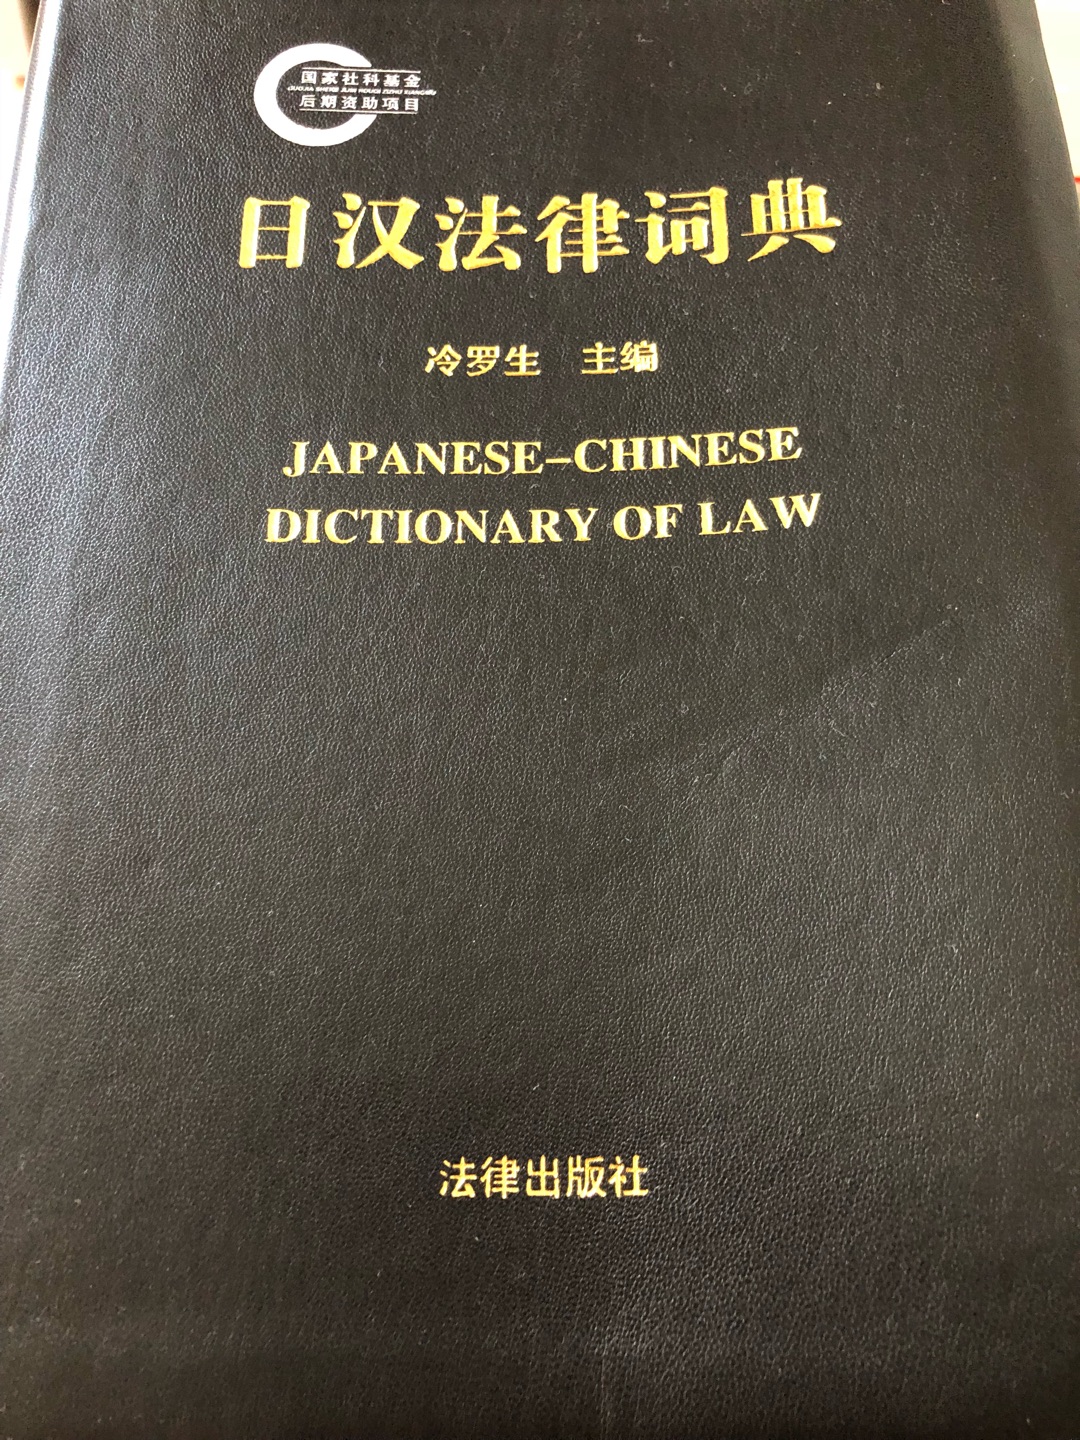 终于有了一本日语对照的法律工具书，排版认真，对于日语和法律学习者都很有用，纸品很好，便于翻阅